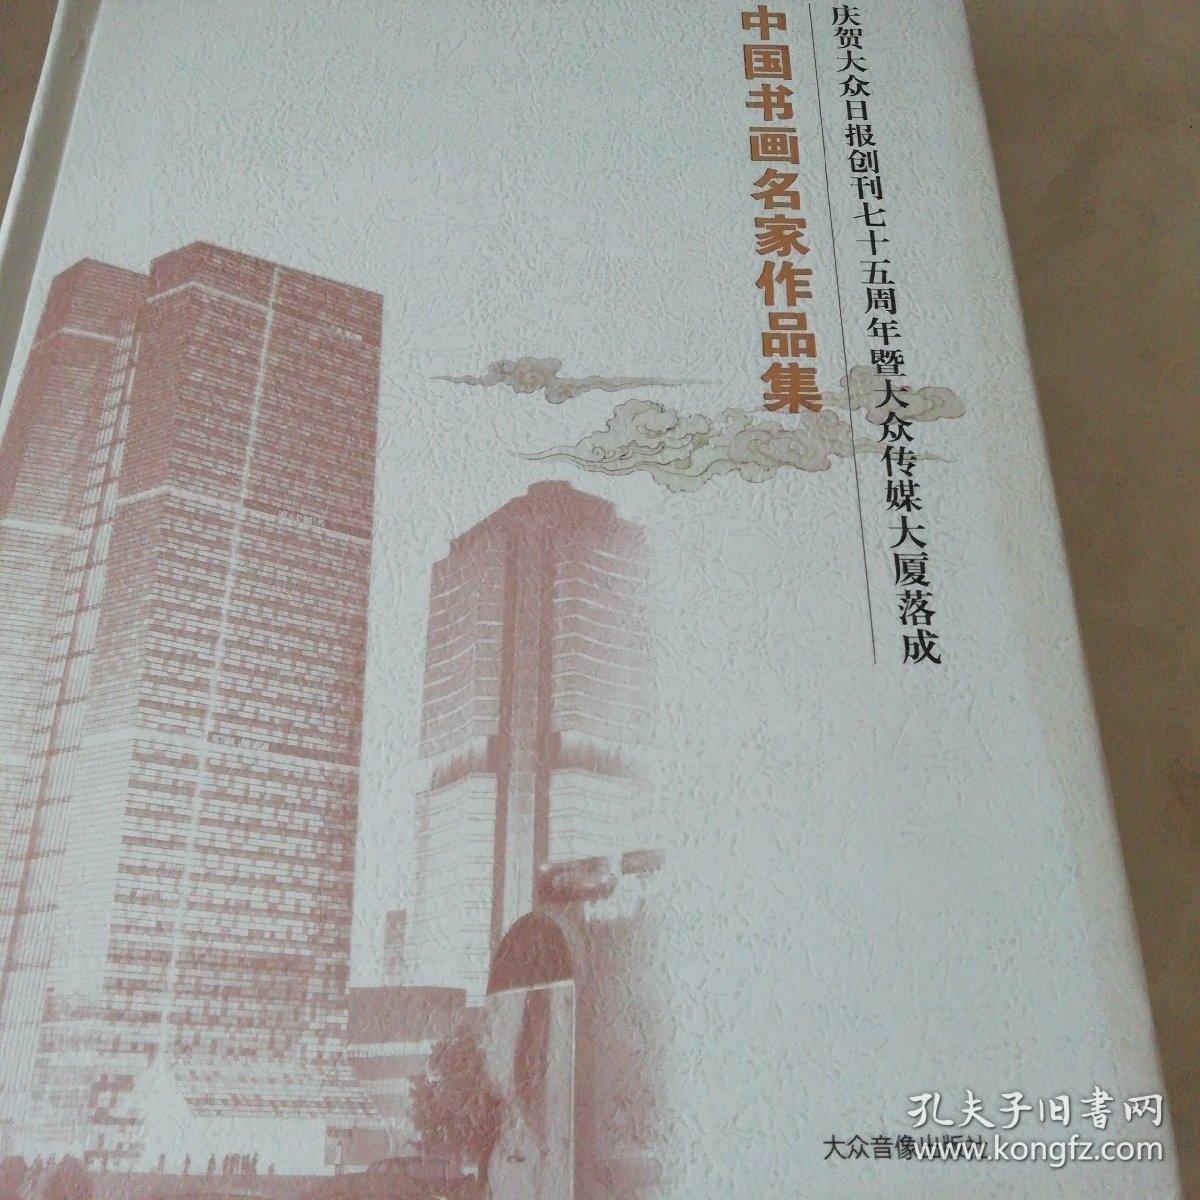 《中国书画名家作品集》庆贺大众日报创刊70周年暨大众全煤大厦落成